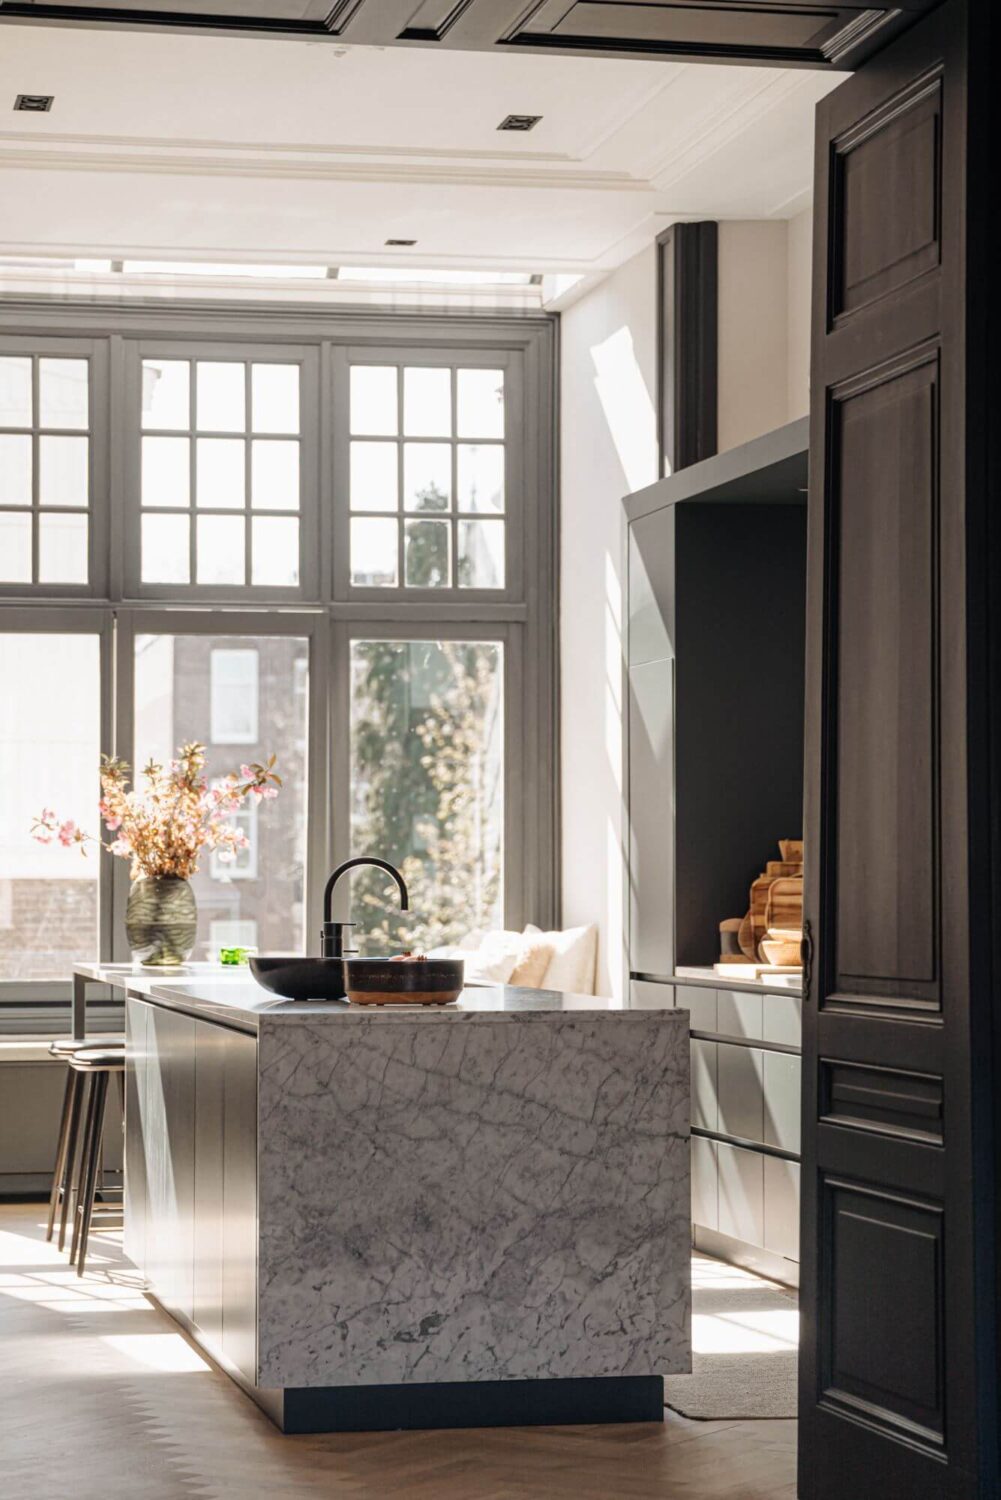 marble-kitchen-island-modern-monochrome-kitchen-nordroom